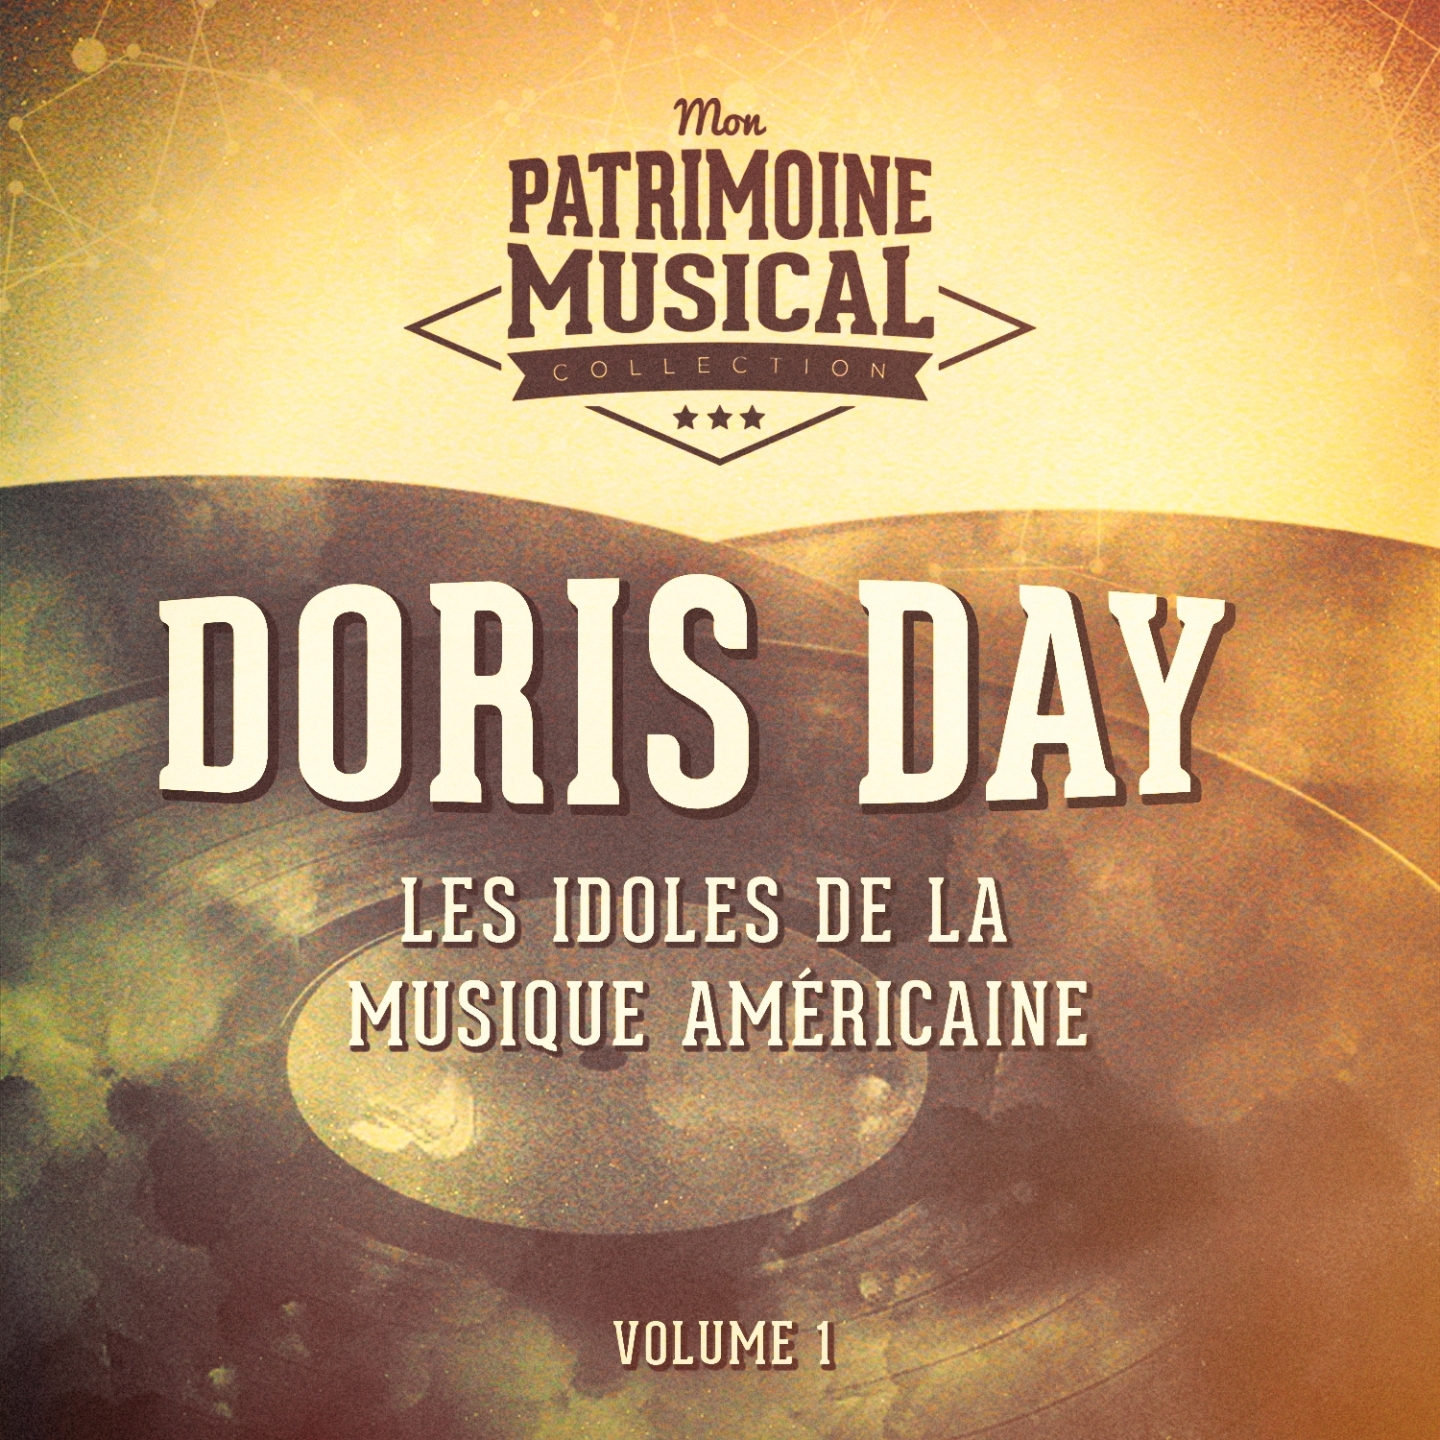 Les idoles de la musique ame ricaine : Doris Day, Vol. 1